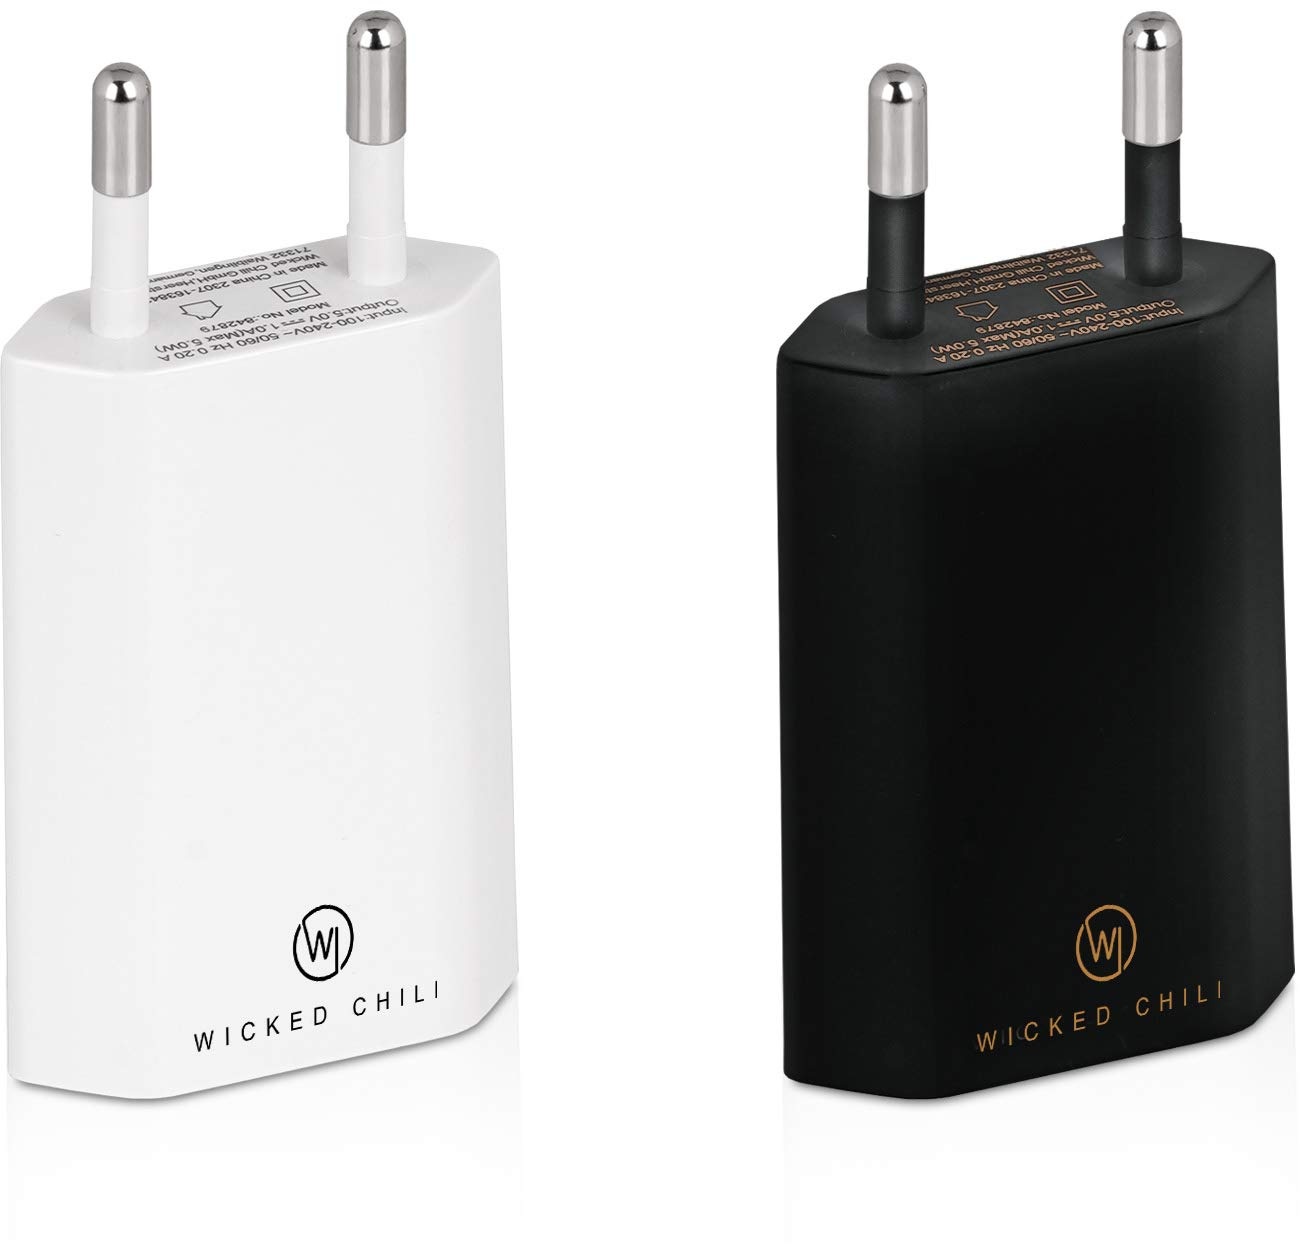 Wicked Chili 2X Pro Series Netzteil USB Adapter kompatibel mit Apple iPhone, Samsung Galaxy/Handy Ladegerät, Smartphone Netzstecker (1A, 5V) schwarz/weiß